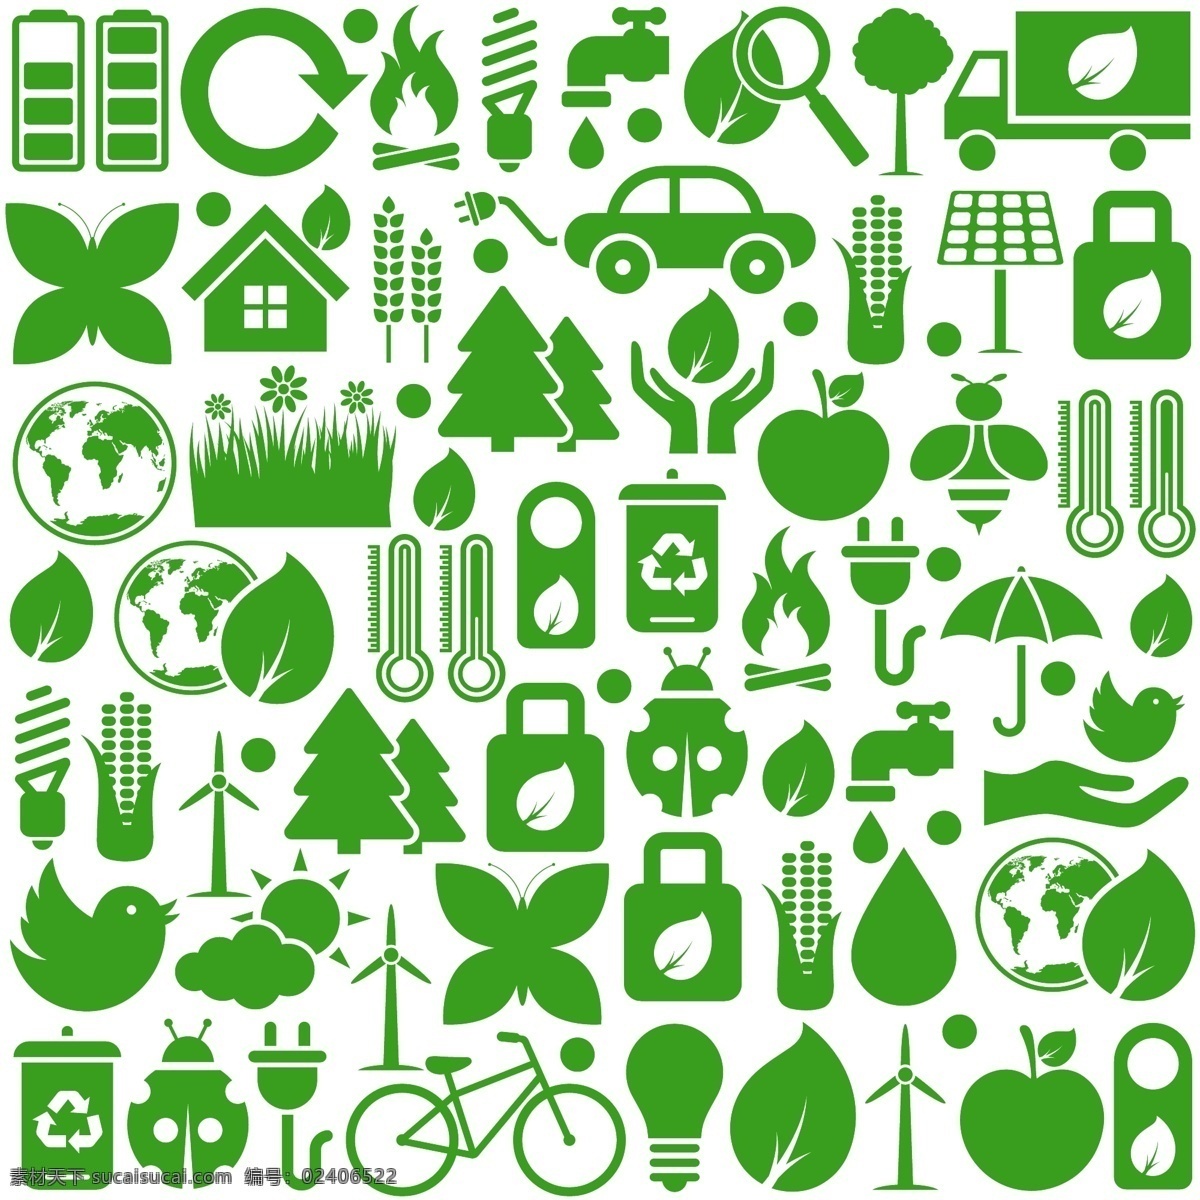 生态 环境保护 图标 绿叶叶子 绿色植物图标 环保标志图标 生态环保 绿色环保 生态环境 环保logo 按钮图标 标志图标